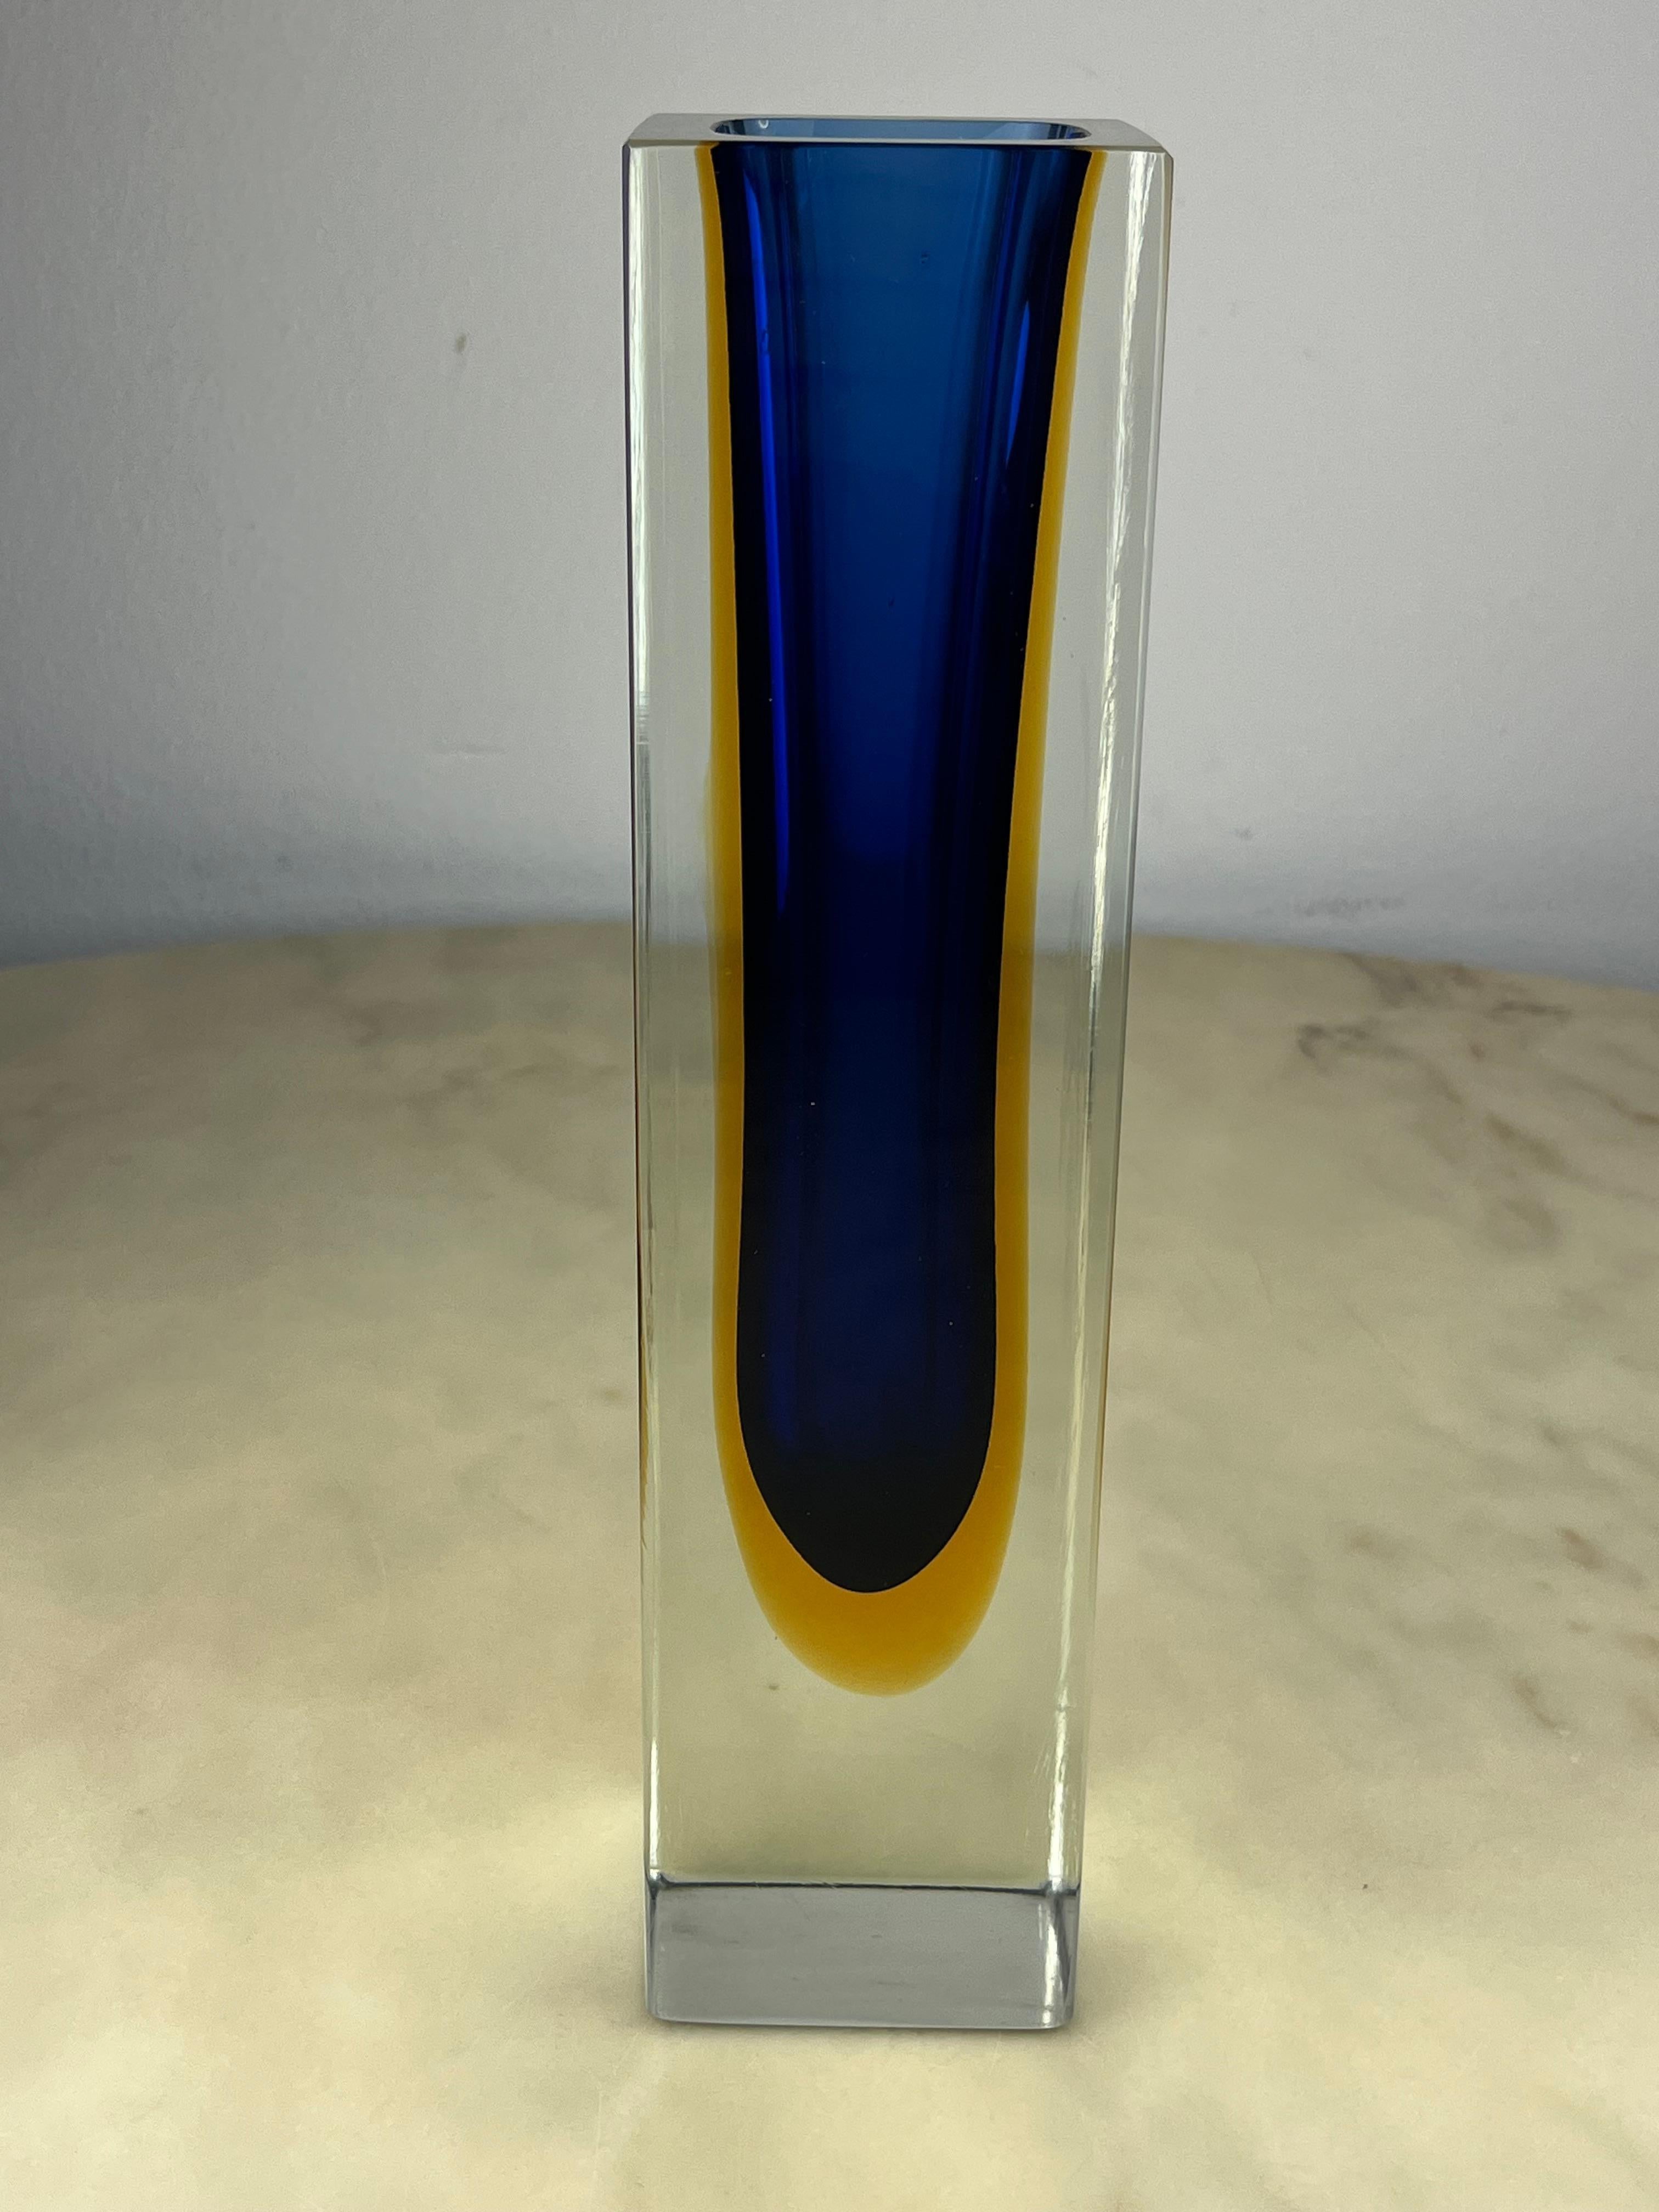 Murano-Vase aus getauchtem Glas, 30 cm hoch, Flavio Poli zugeschrieben, Italien, 1970er Jahre
Es war immer im Besitz meiner Familie und ist in ausgezeichnetem Zustand. Es hat einen sehr kleinen Chip, fast unsichtbar.
Es wurde von meinen Großeltern